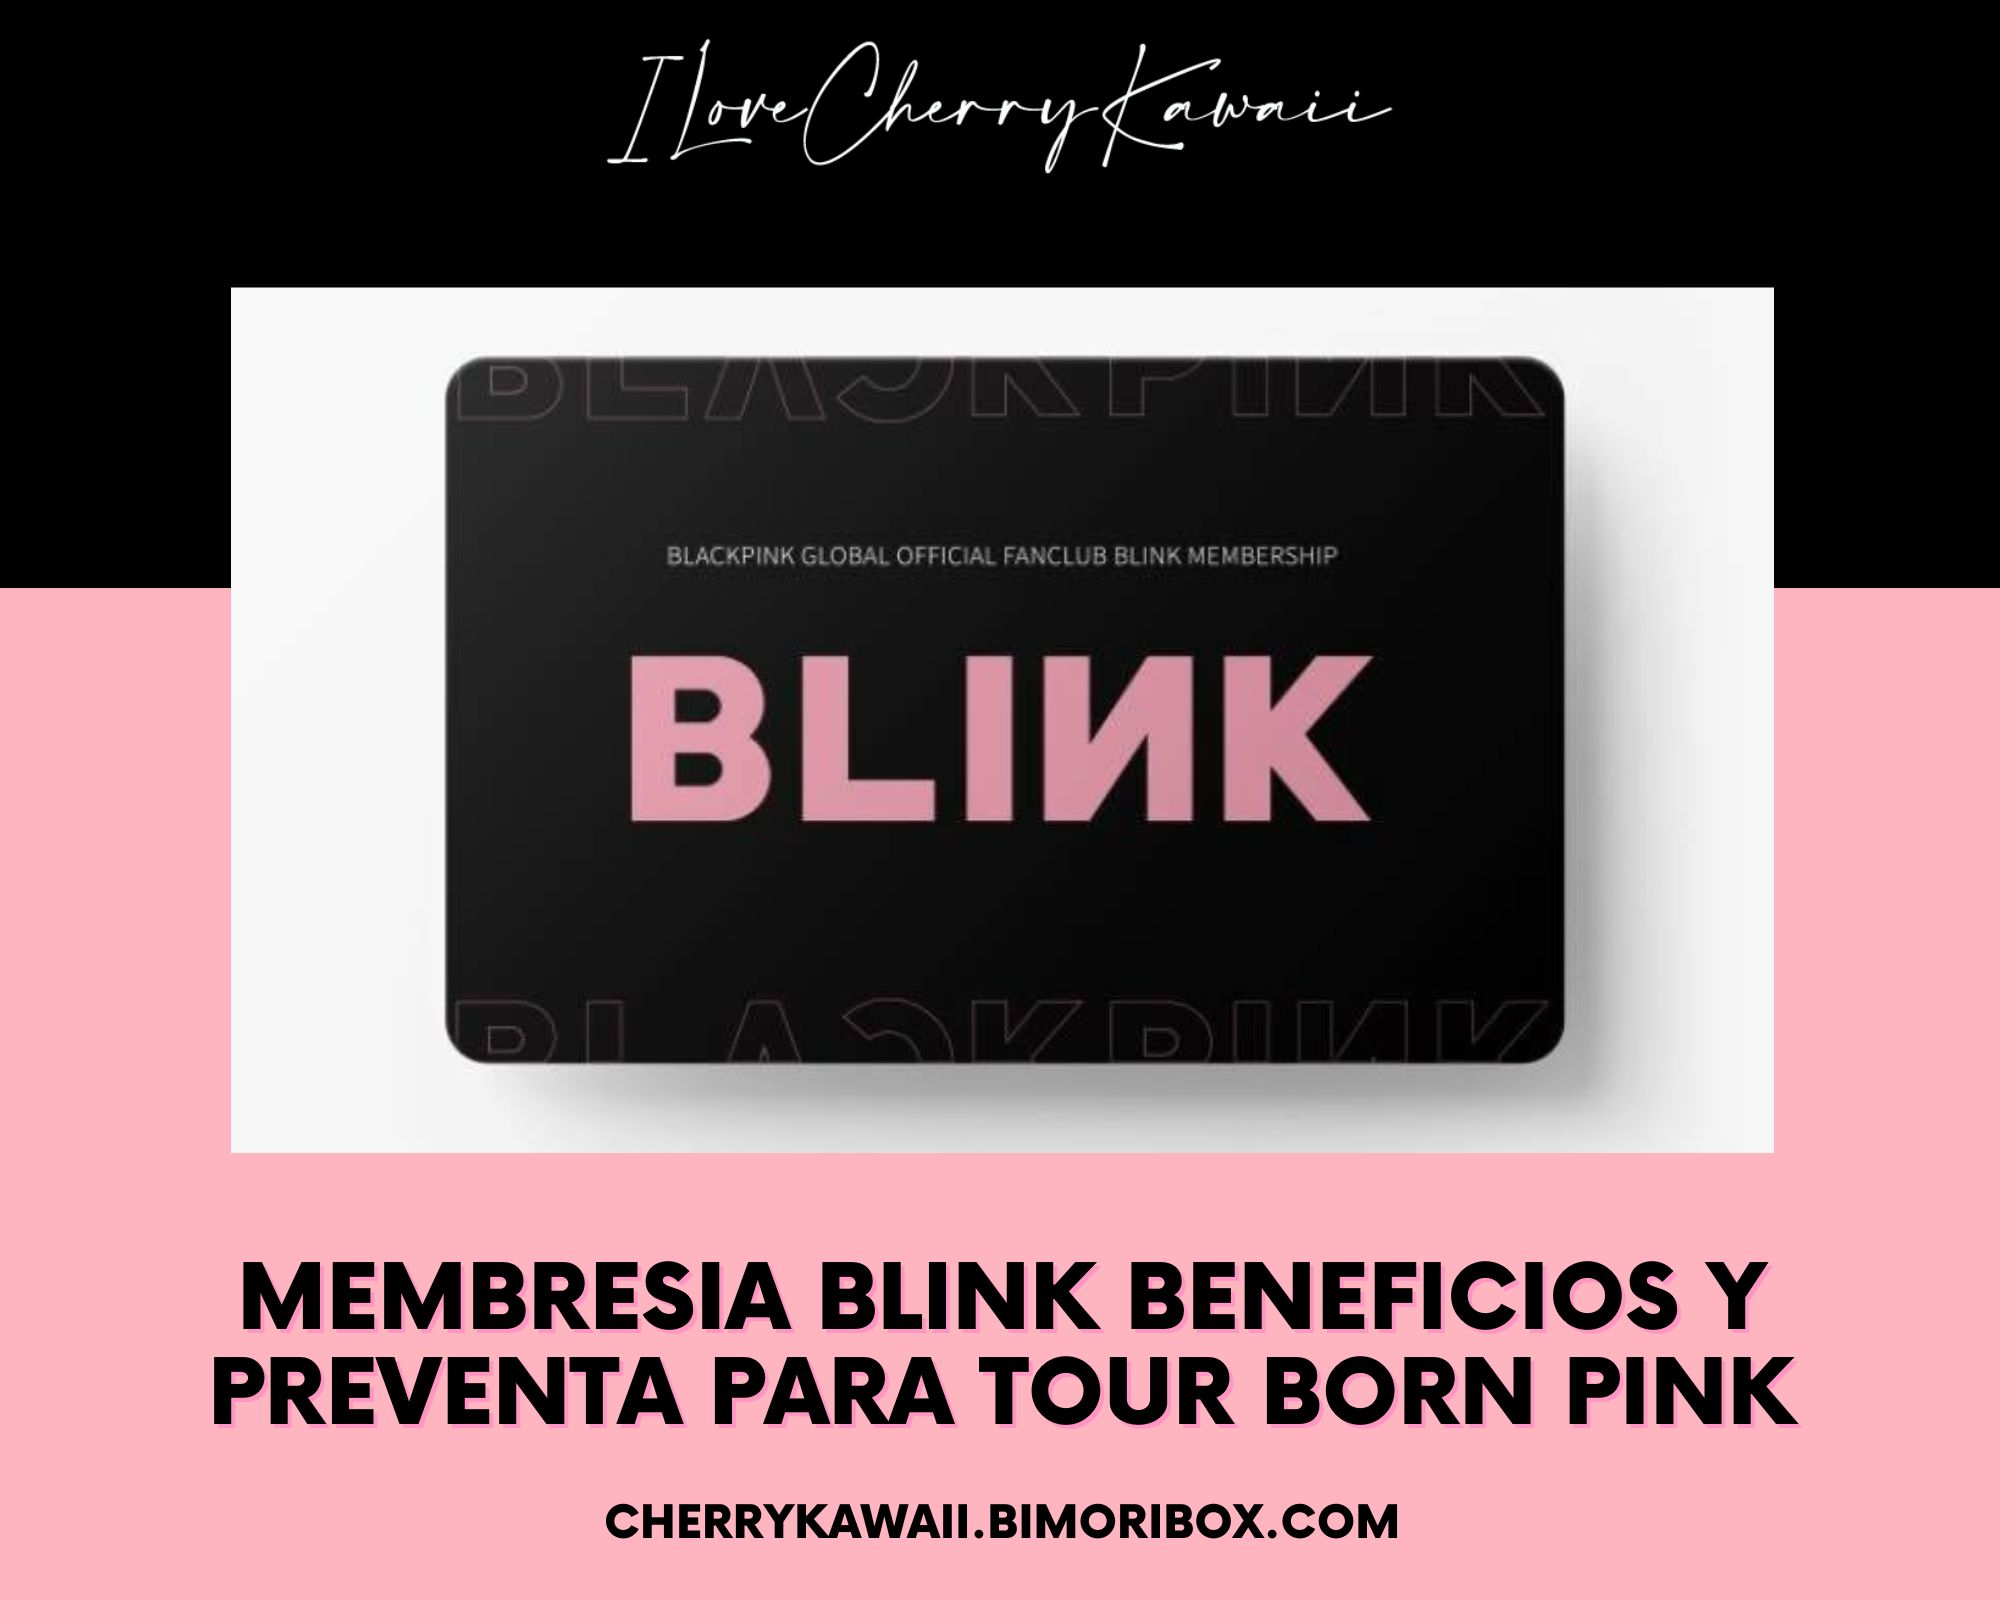 MEMBRESIA BLINK BENEFICIOS Y PREVENTA PARA TOUR BORN PINK